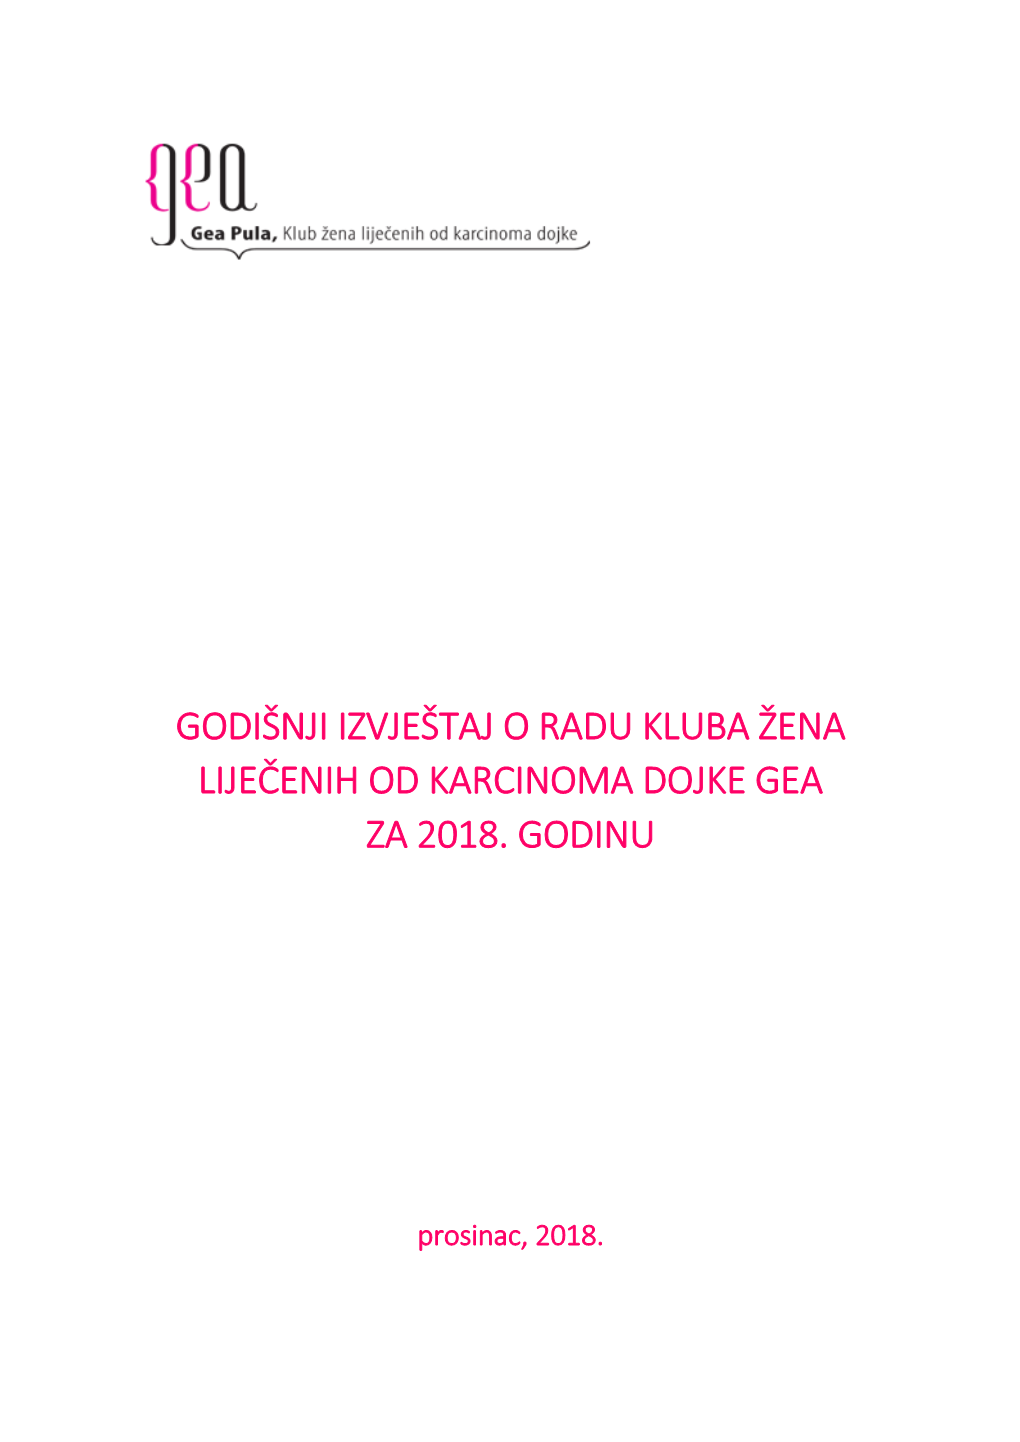 Godišnji Izvještaj O Radu Kluba Žena Liječenih Od Karcinoma Dojke Gea Za 2018. Godinu